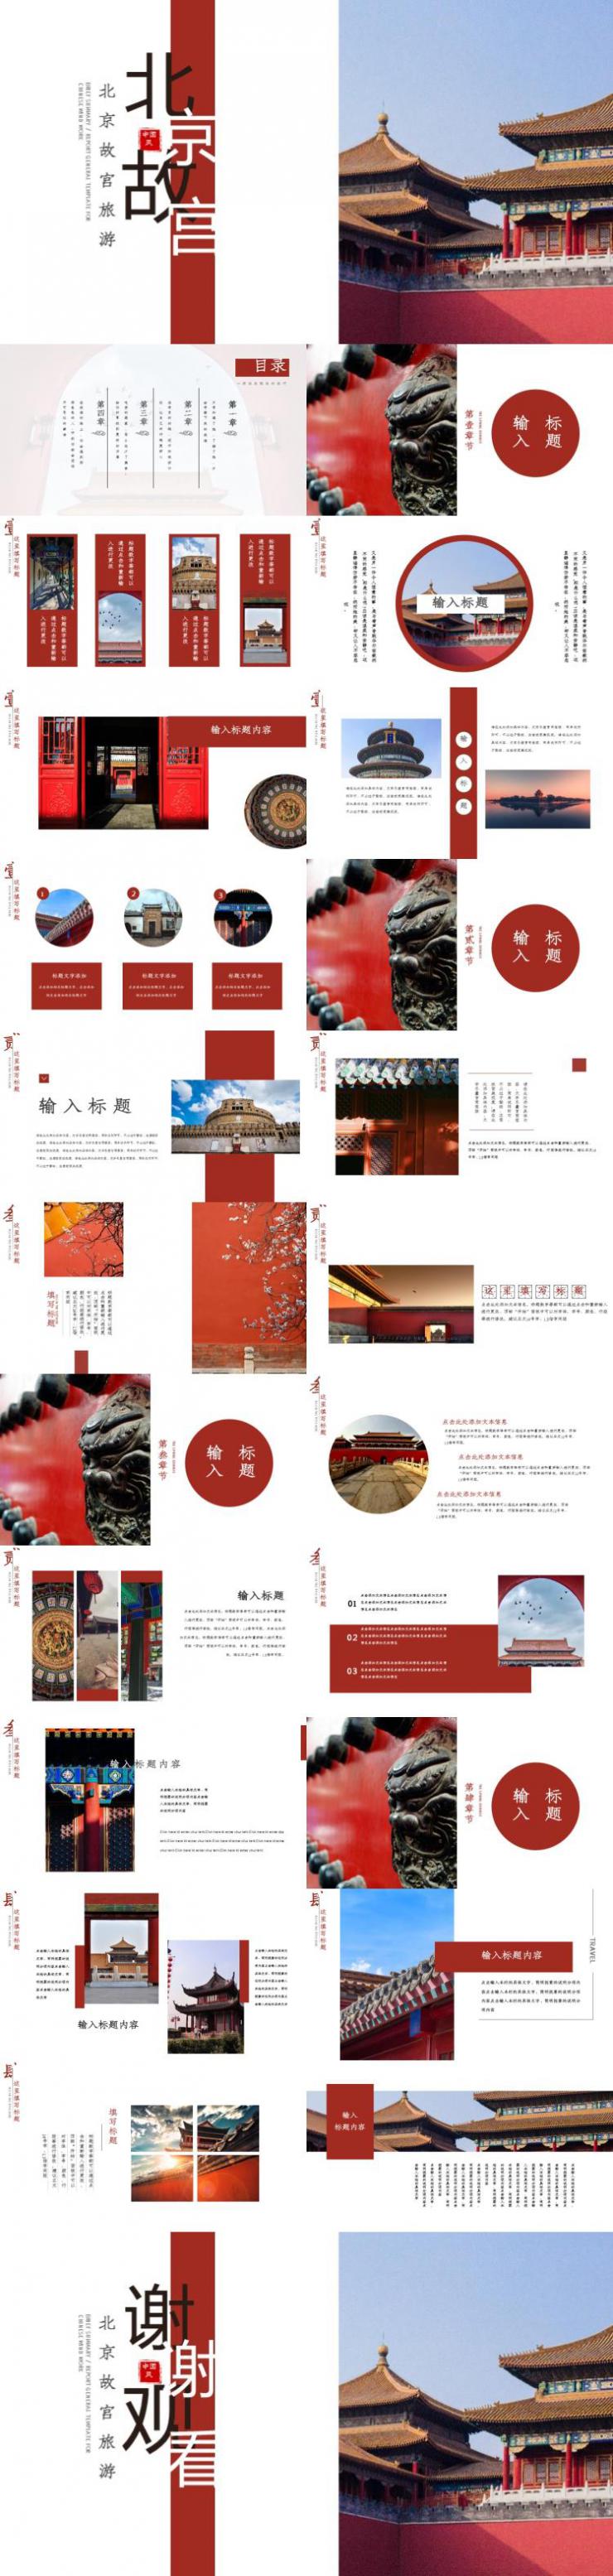 北京故宮旅游PPT模板下載